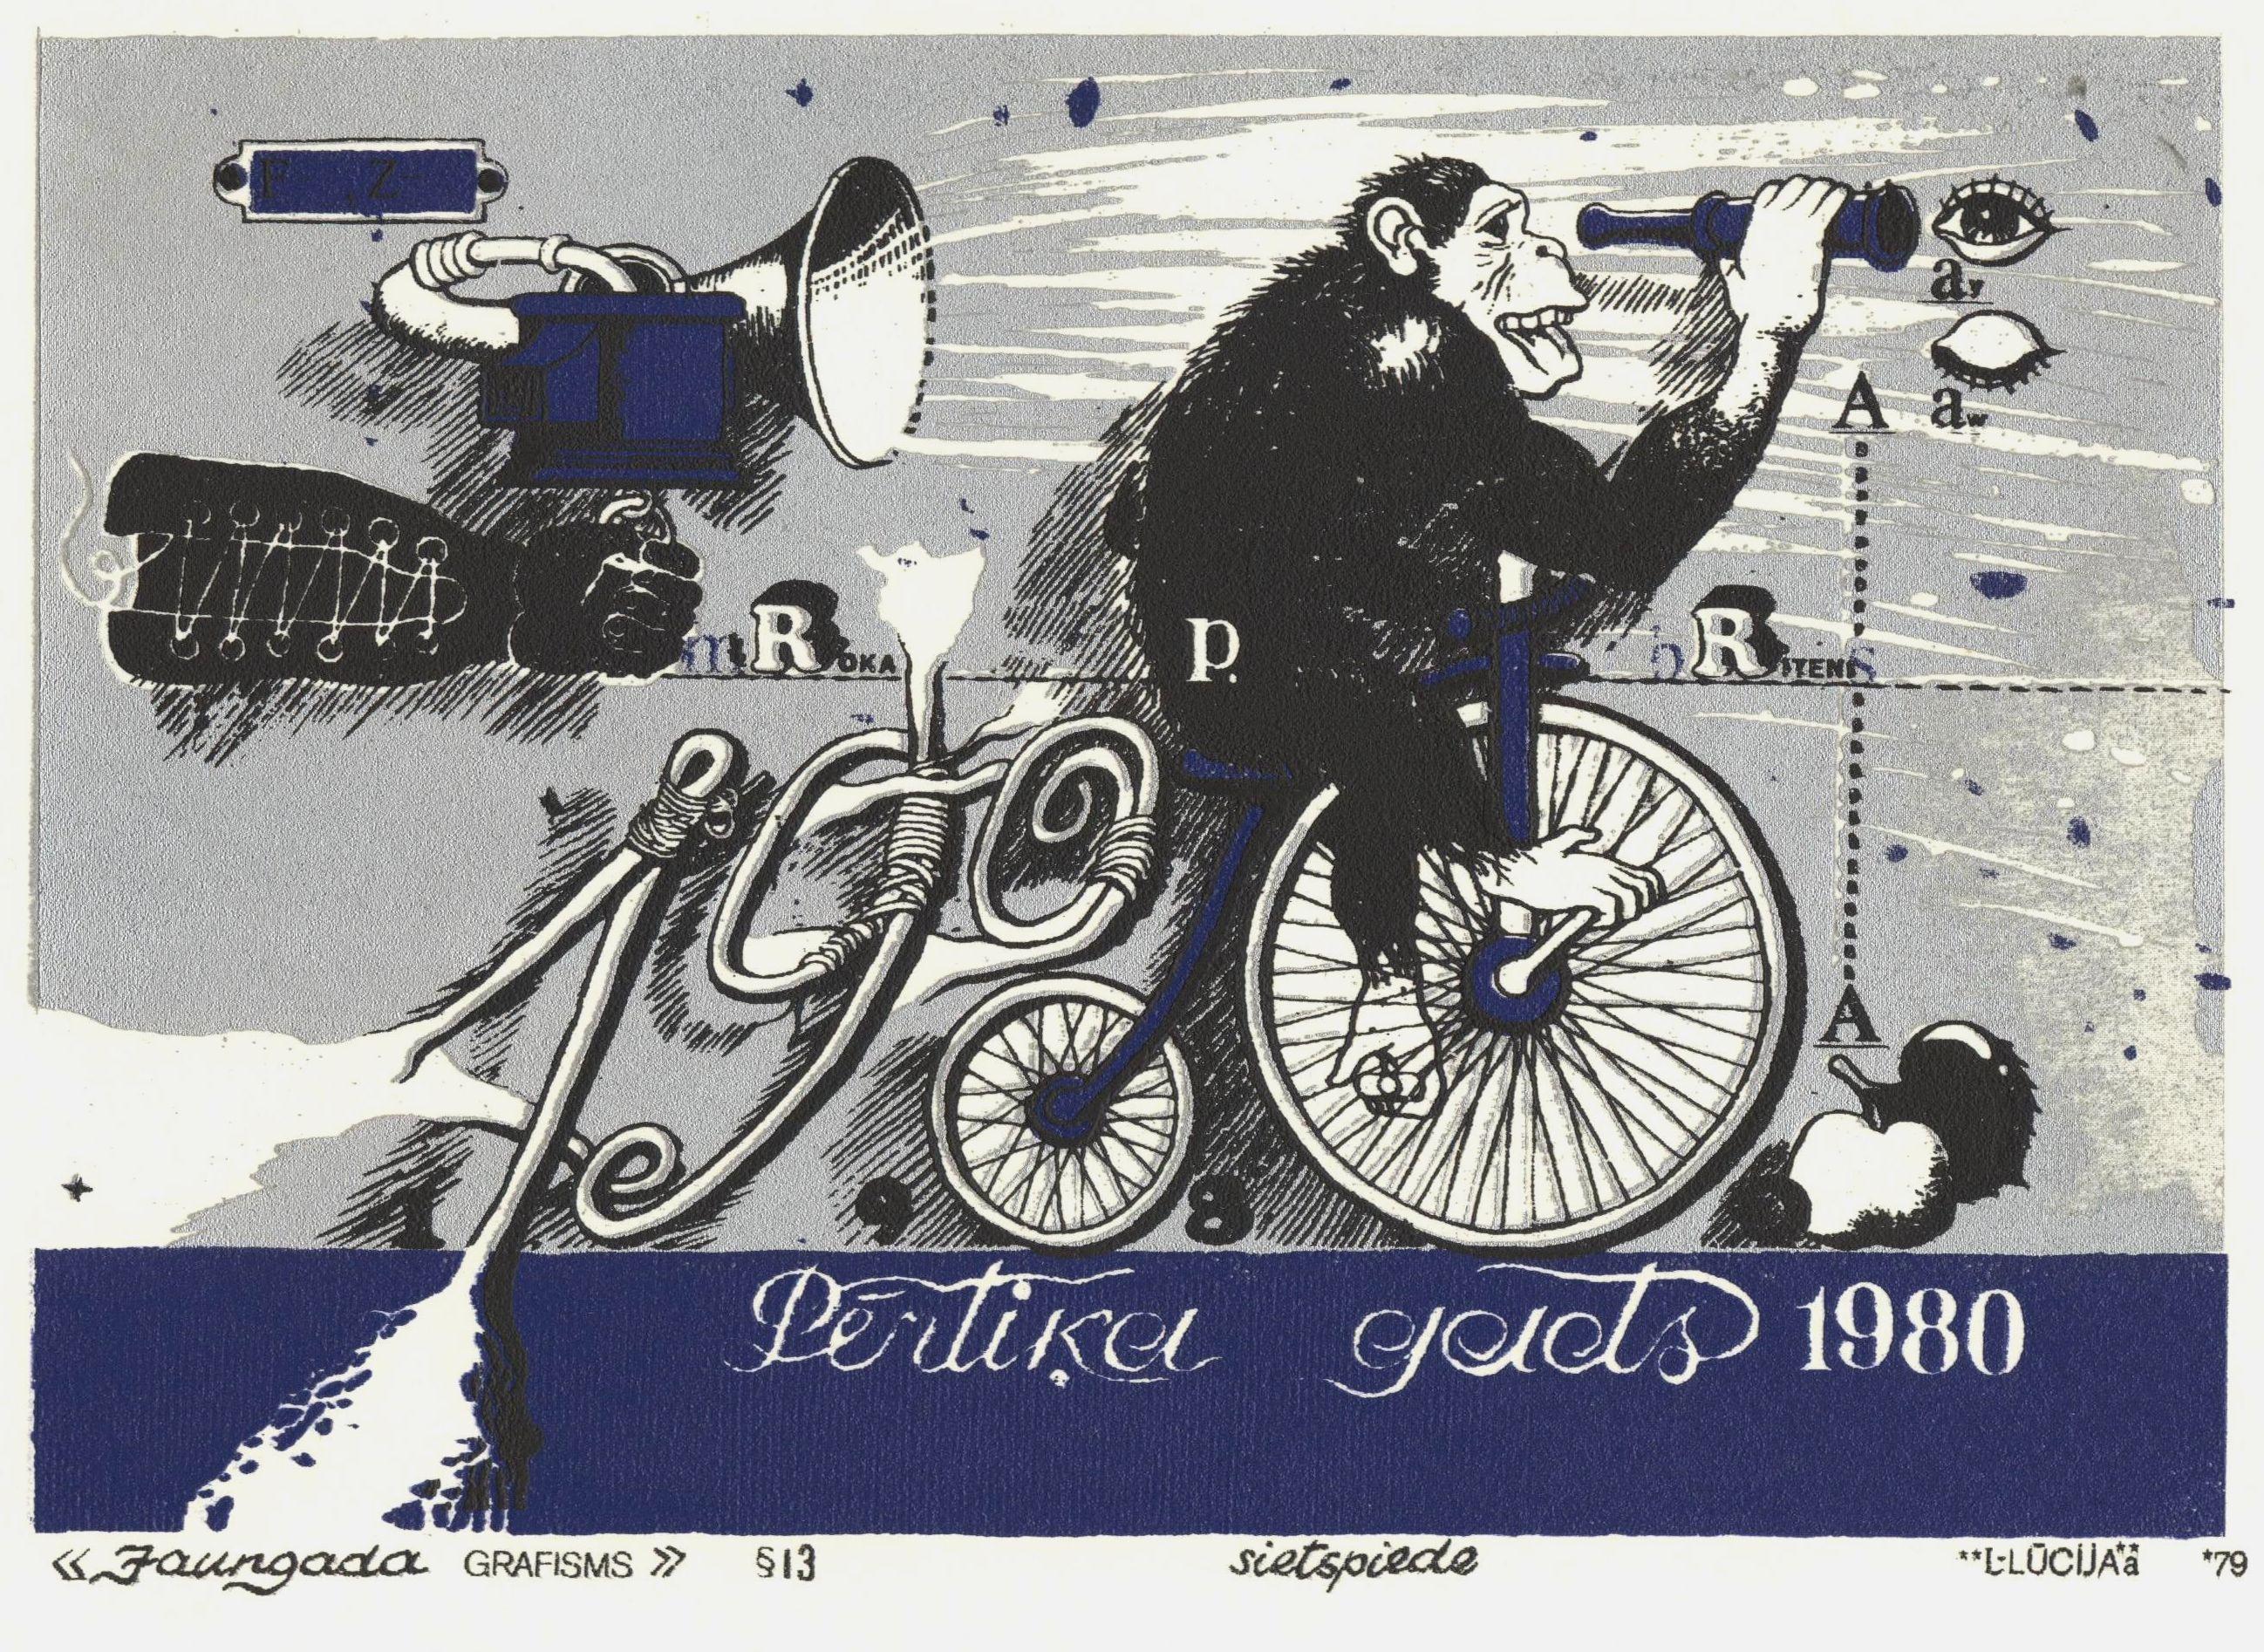 « The New Year graphisms & 13, 1979, papier, écran de soie, 15,5 x 21,5 cm